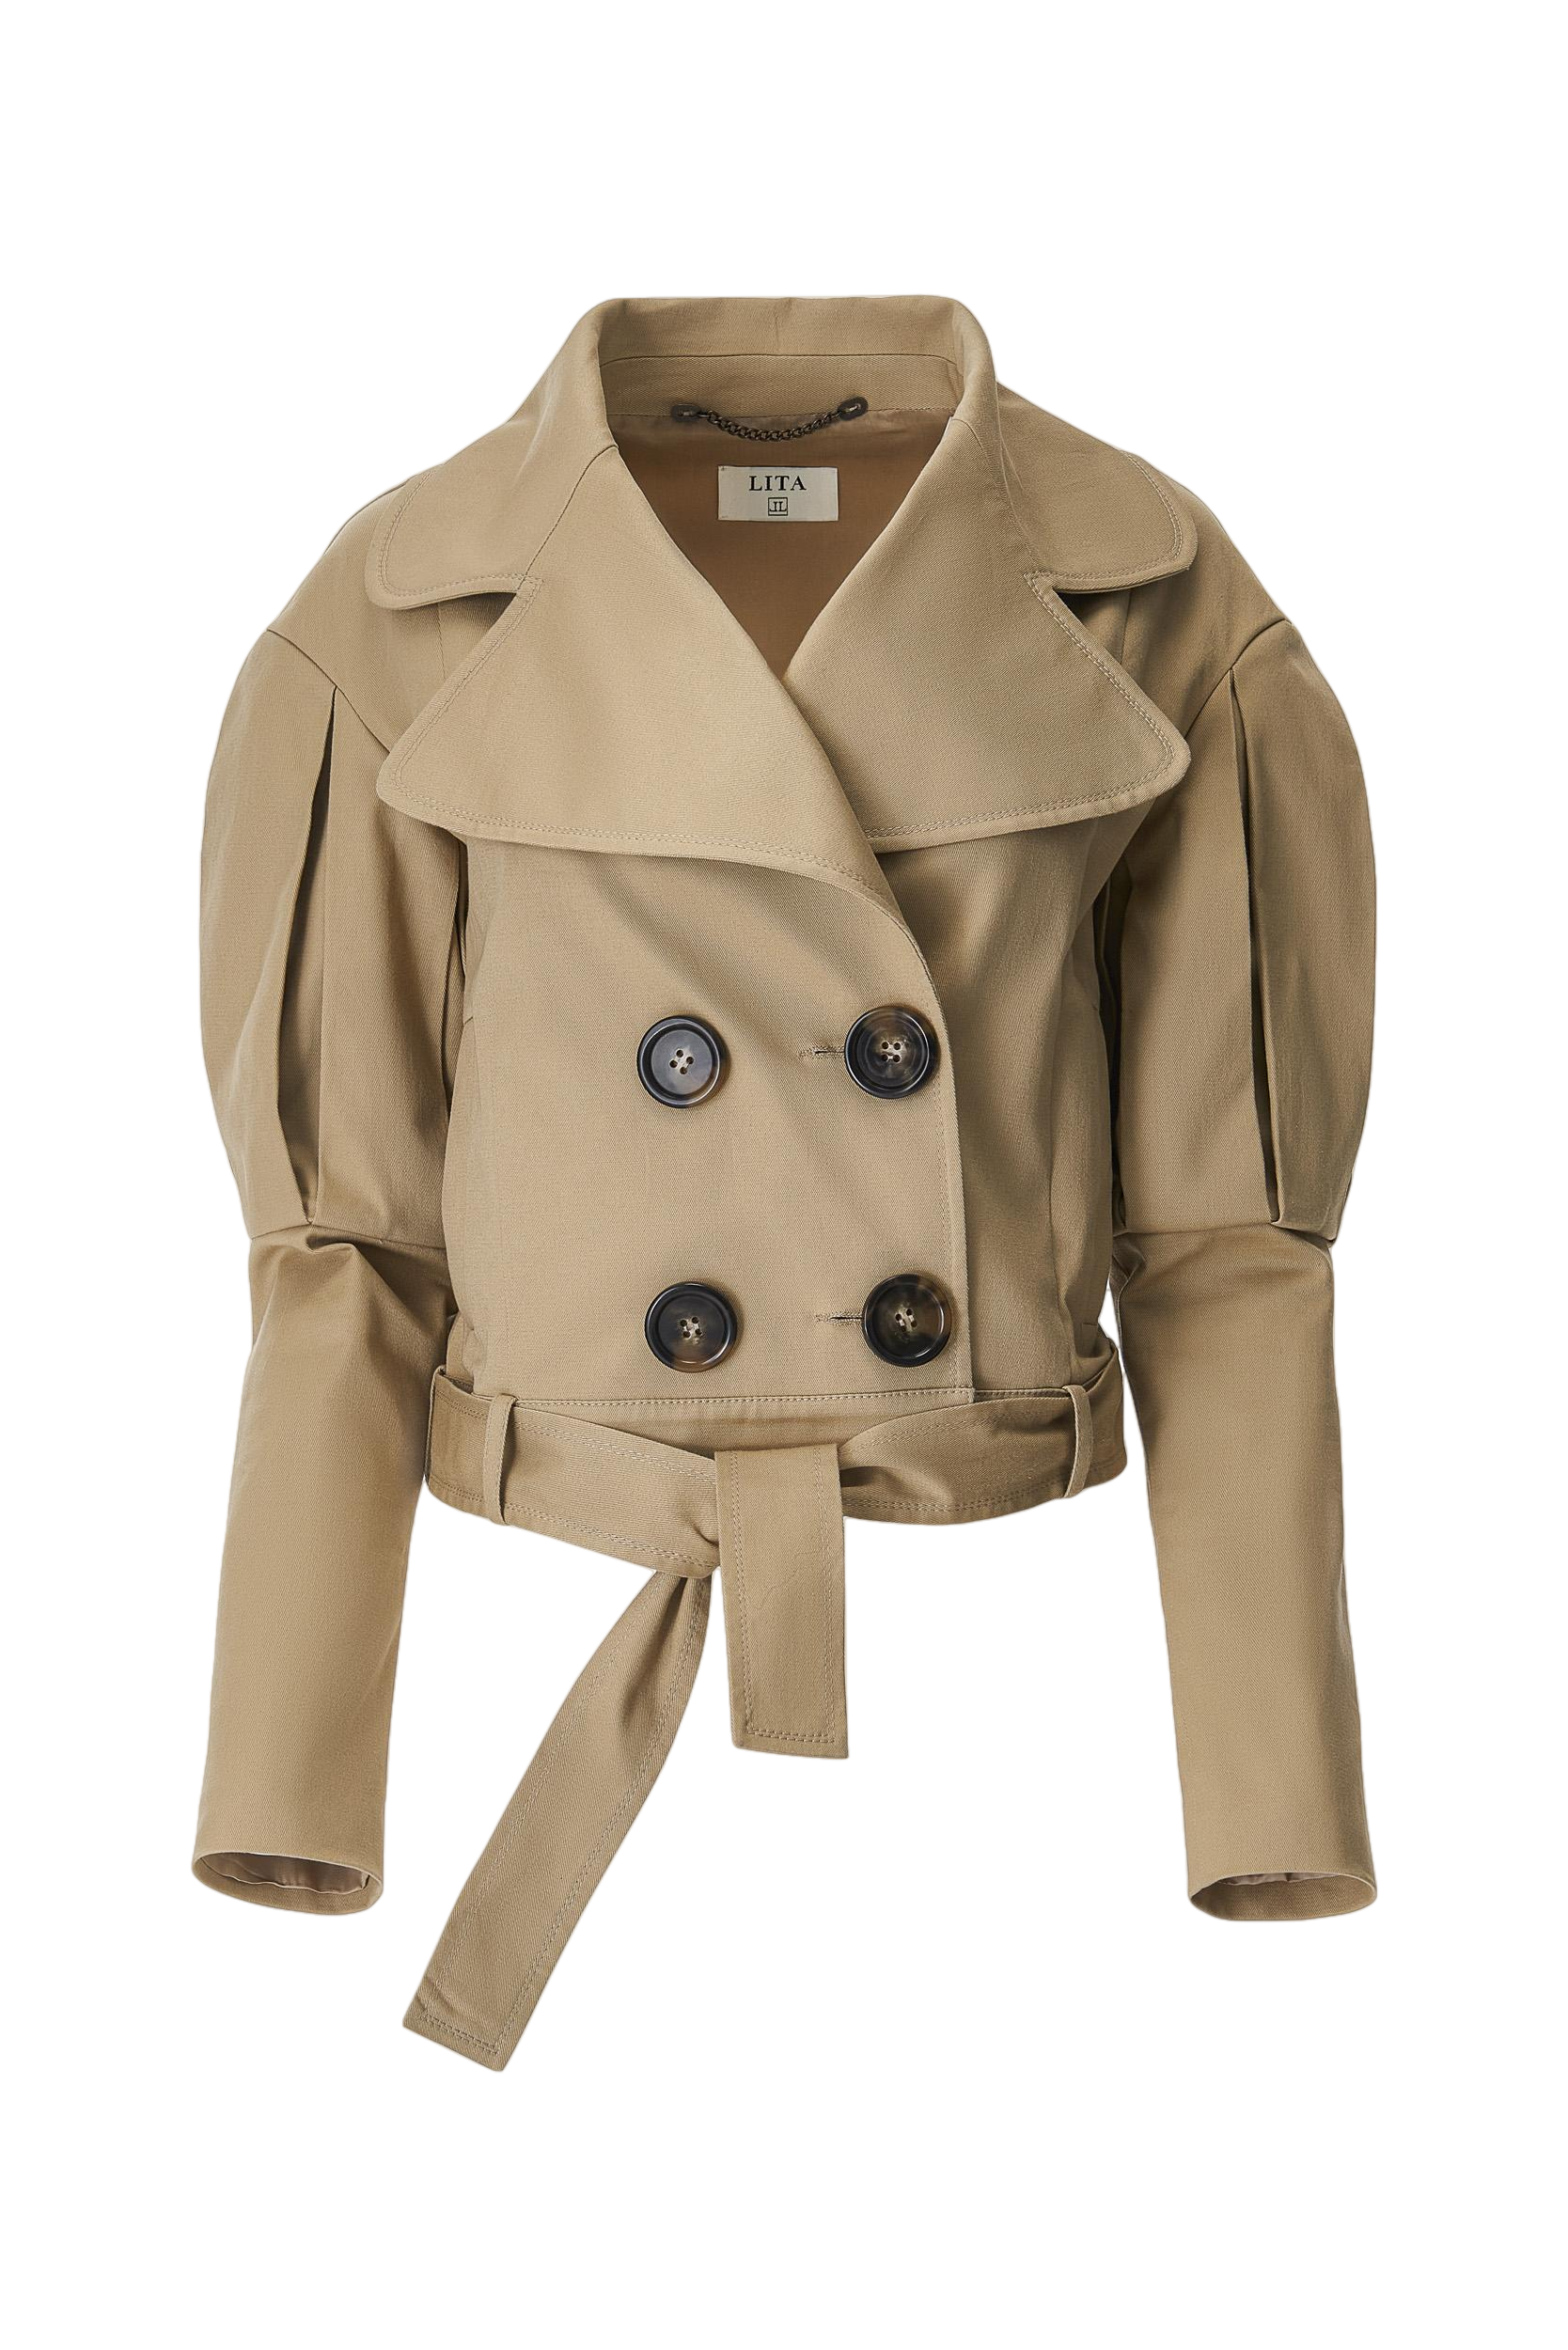 Statement jacket with oversized lapels in  beige von Lita Couture